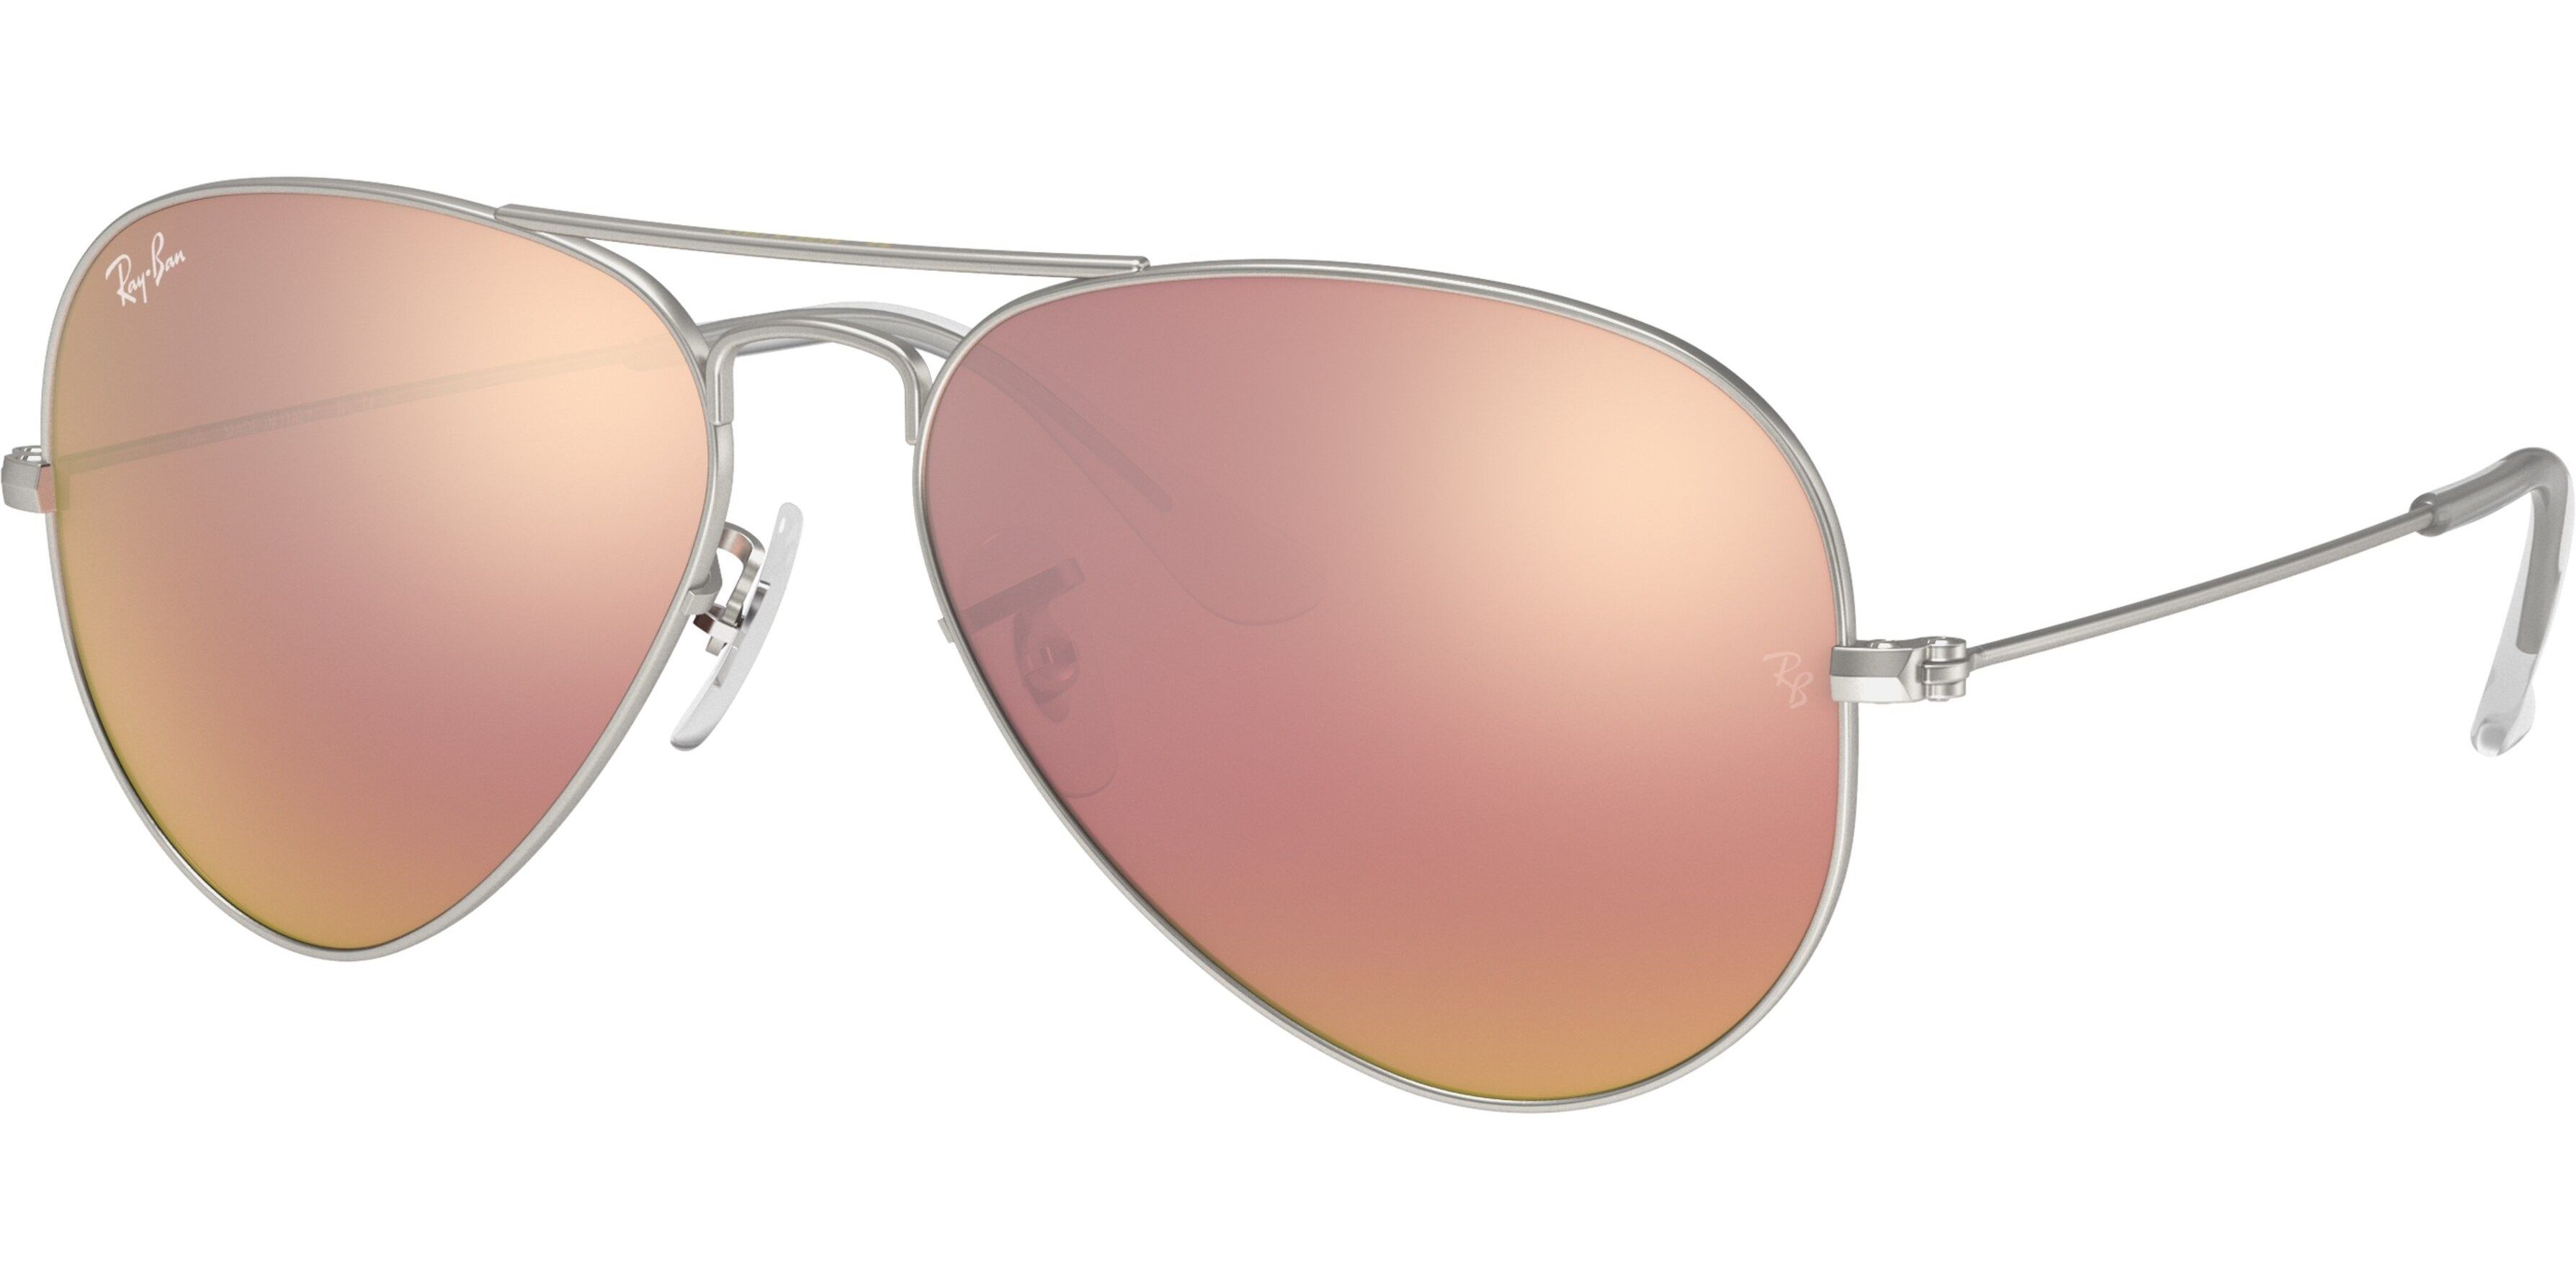 Sluneční brýle Ray-Ban® model 3025, barva obruby stříbrná mat, čočka růžová zrcadlo, kód barevné varianty 019Z2. 